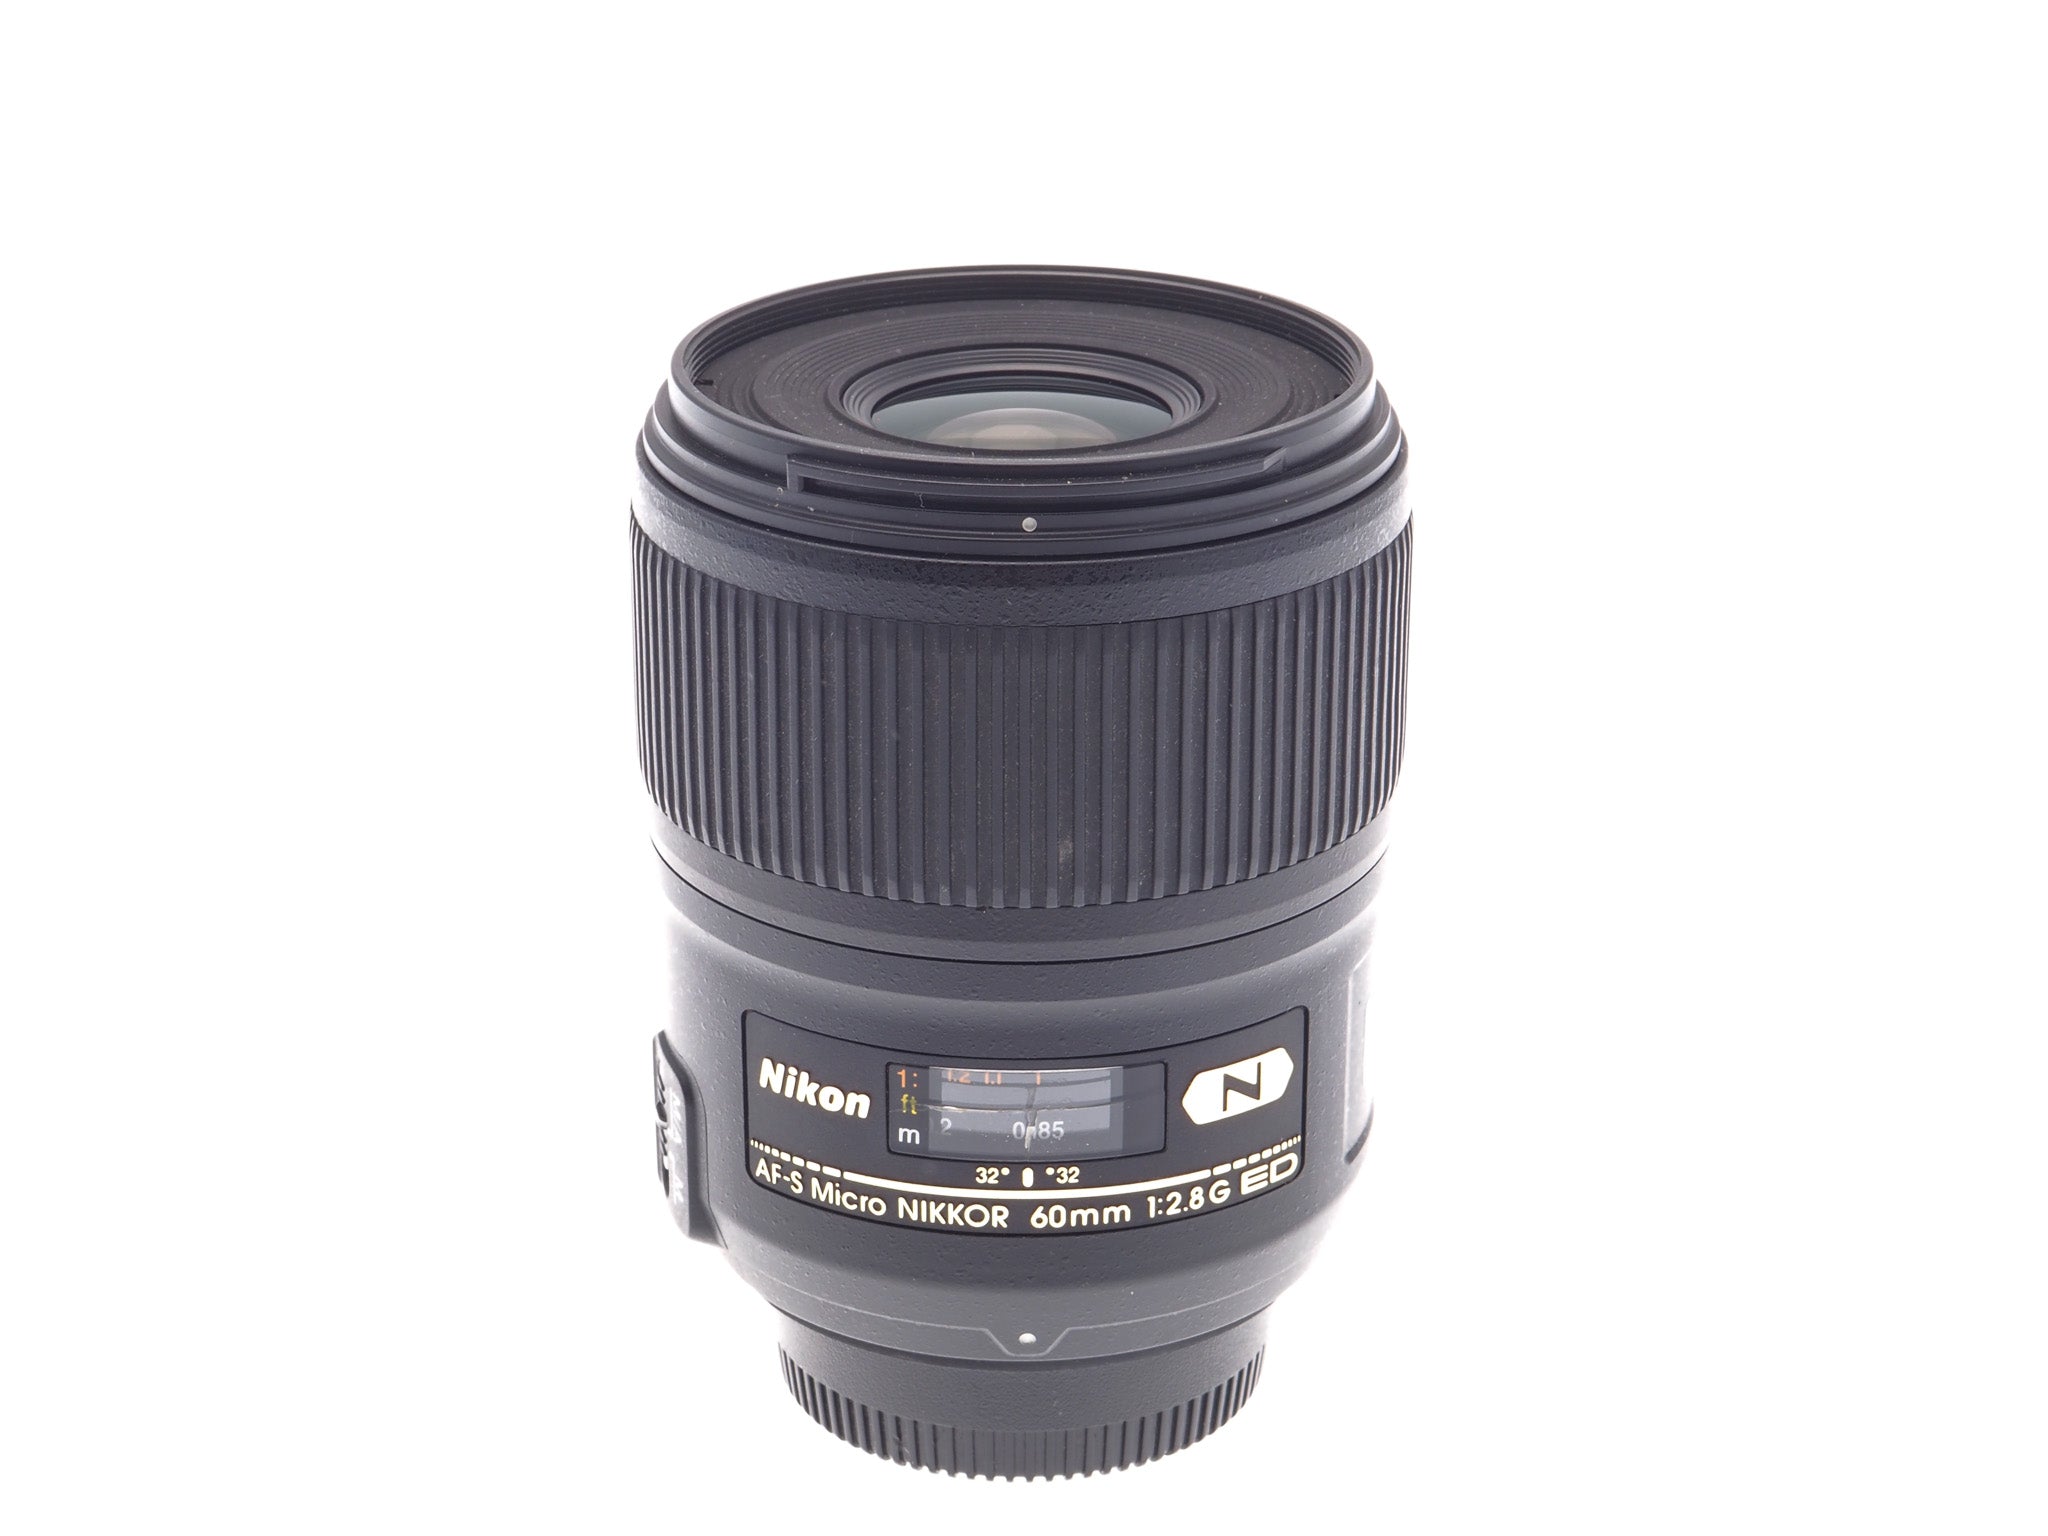 Nikon 60mm f2.8 G ED N AF-S Micro Nikkor - Lens – Kamerastore